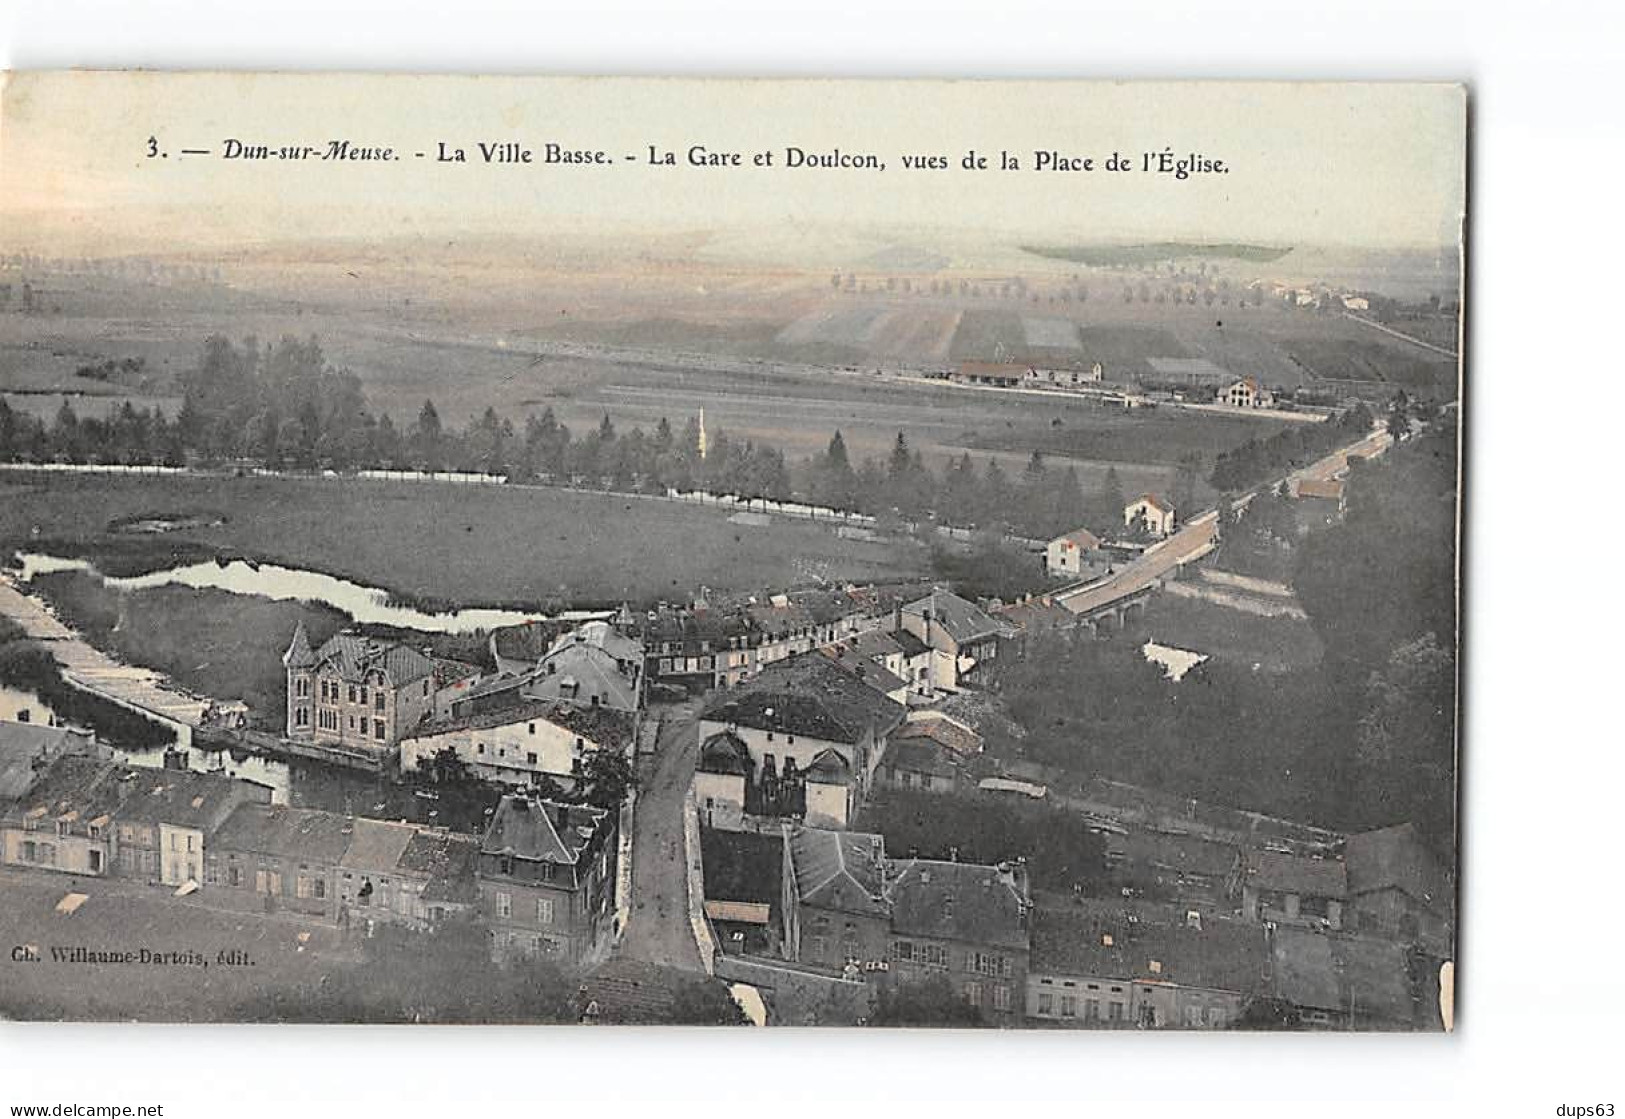 DUN SUR MEUSE - La Villa Basse - La Gare Et Doulcon Vues De La Place De L'Eglise - Très Bon état - Dun Sur Meuse